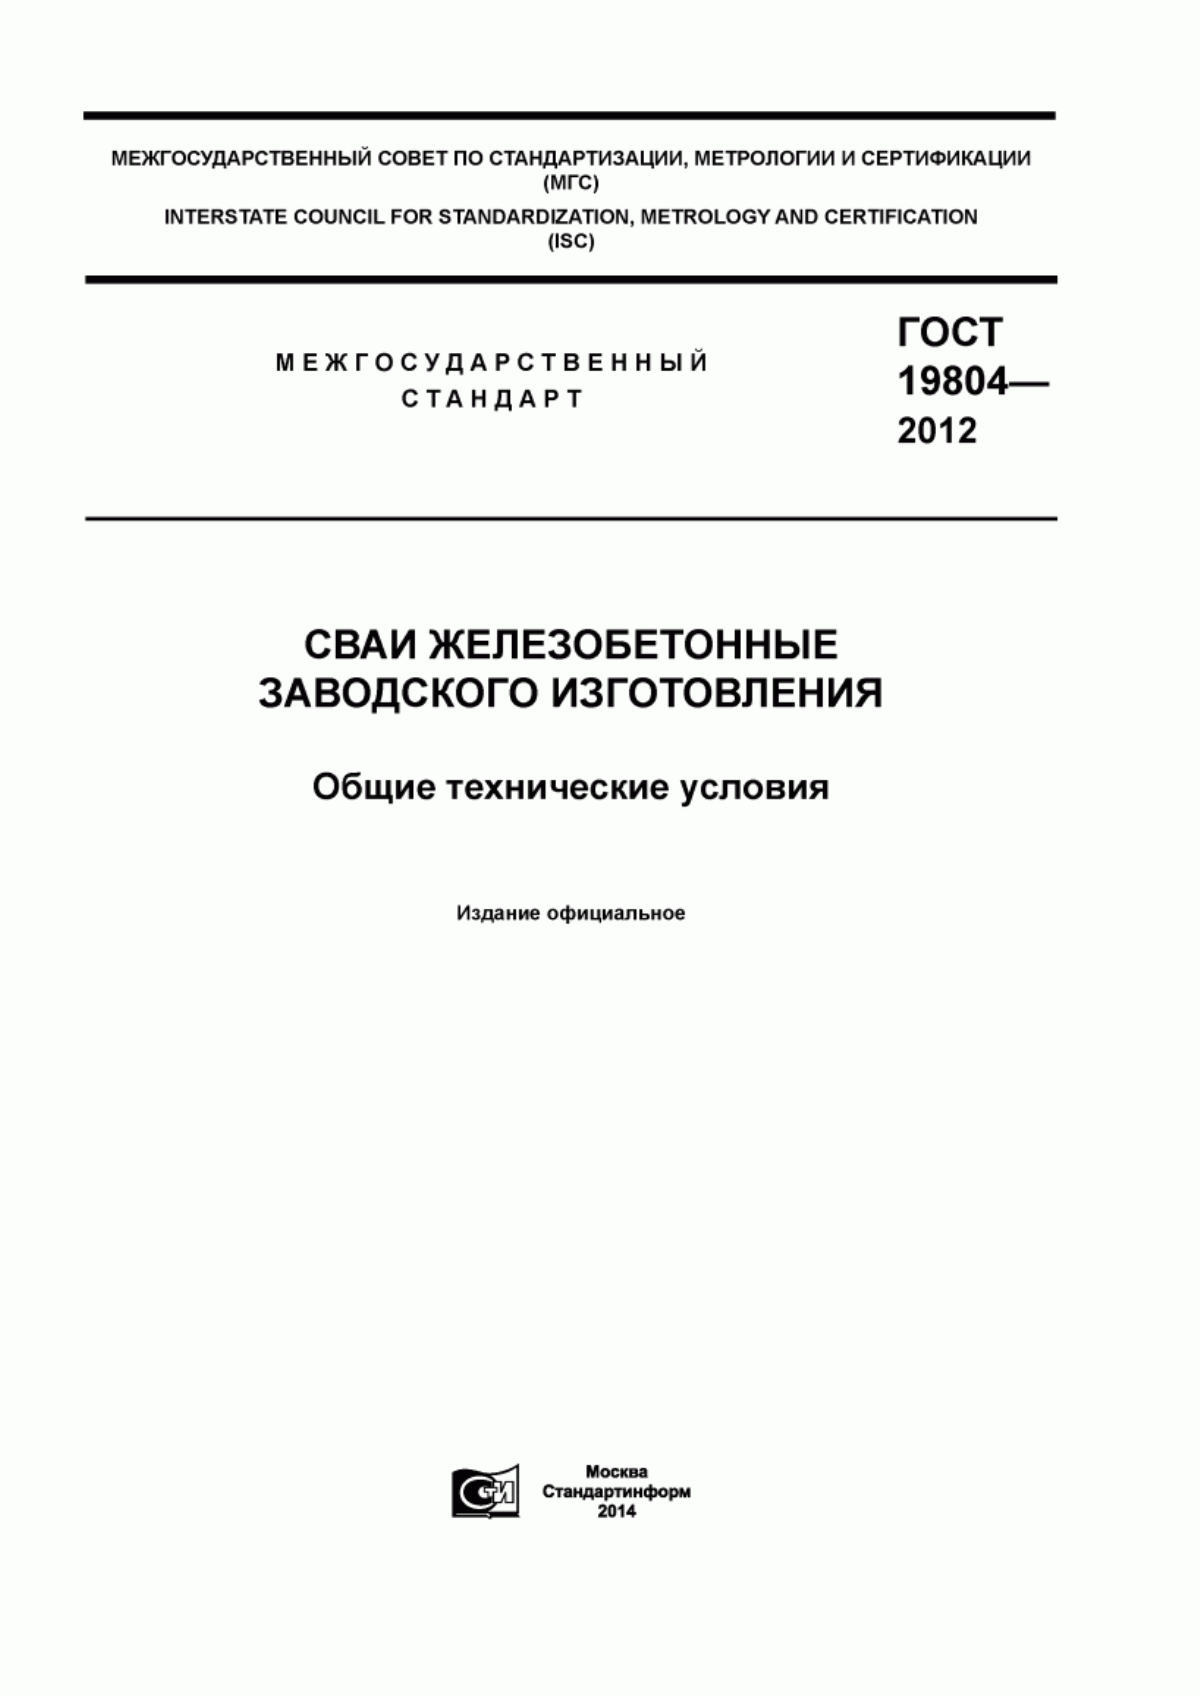 ГОСТ 19804-2012 Сваи железобетонные заводского изготовления. Общие технические условия